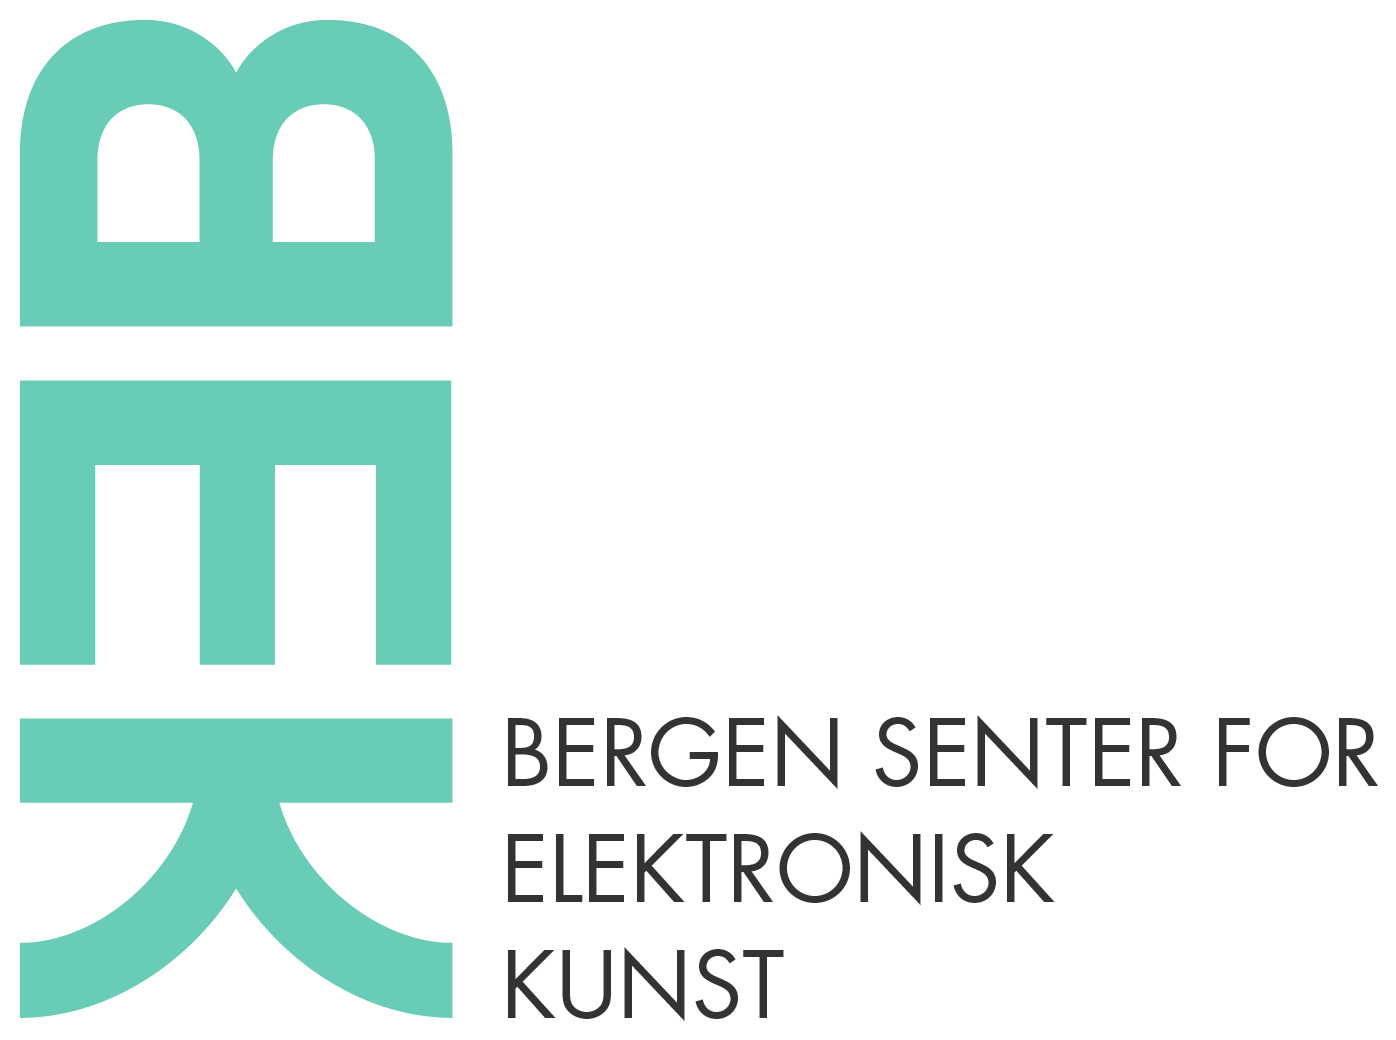 BEK (Bergen senter for elektroni